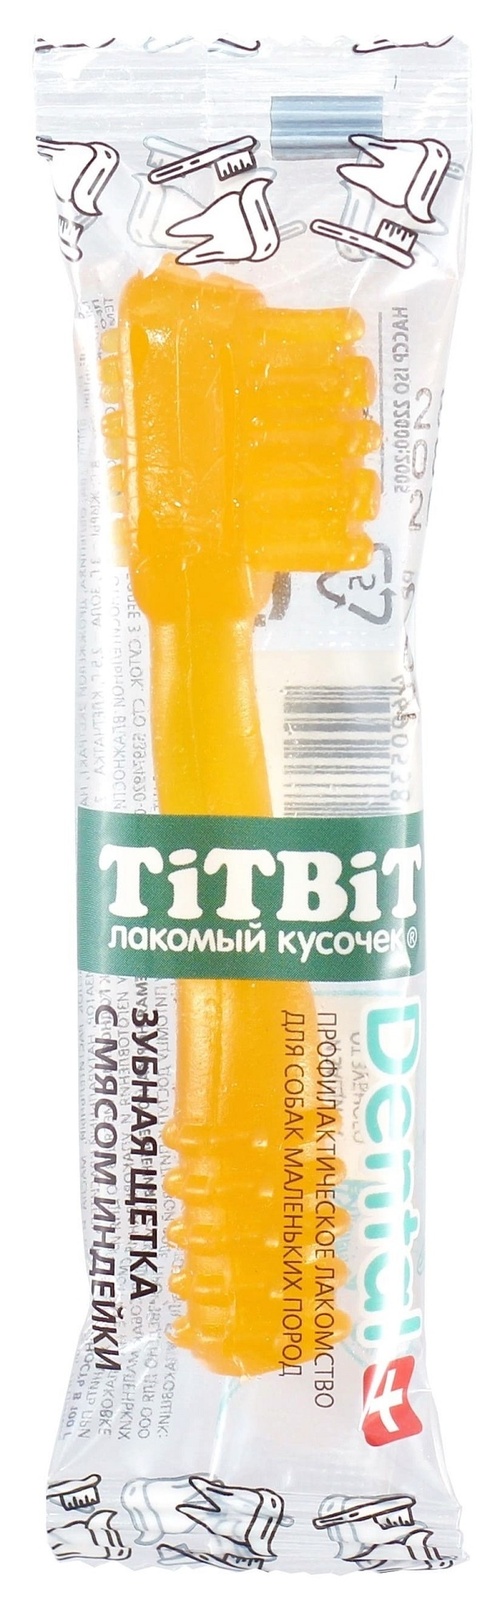 TiTBiT TiTBiT дЕНТАЛ+ Зубная щетка с мясом индейки для собак маленьких пород (13 г) titbit titbit батончик с мясом индейки и черносливом для собак 40 г